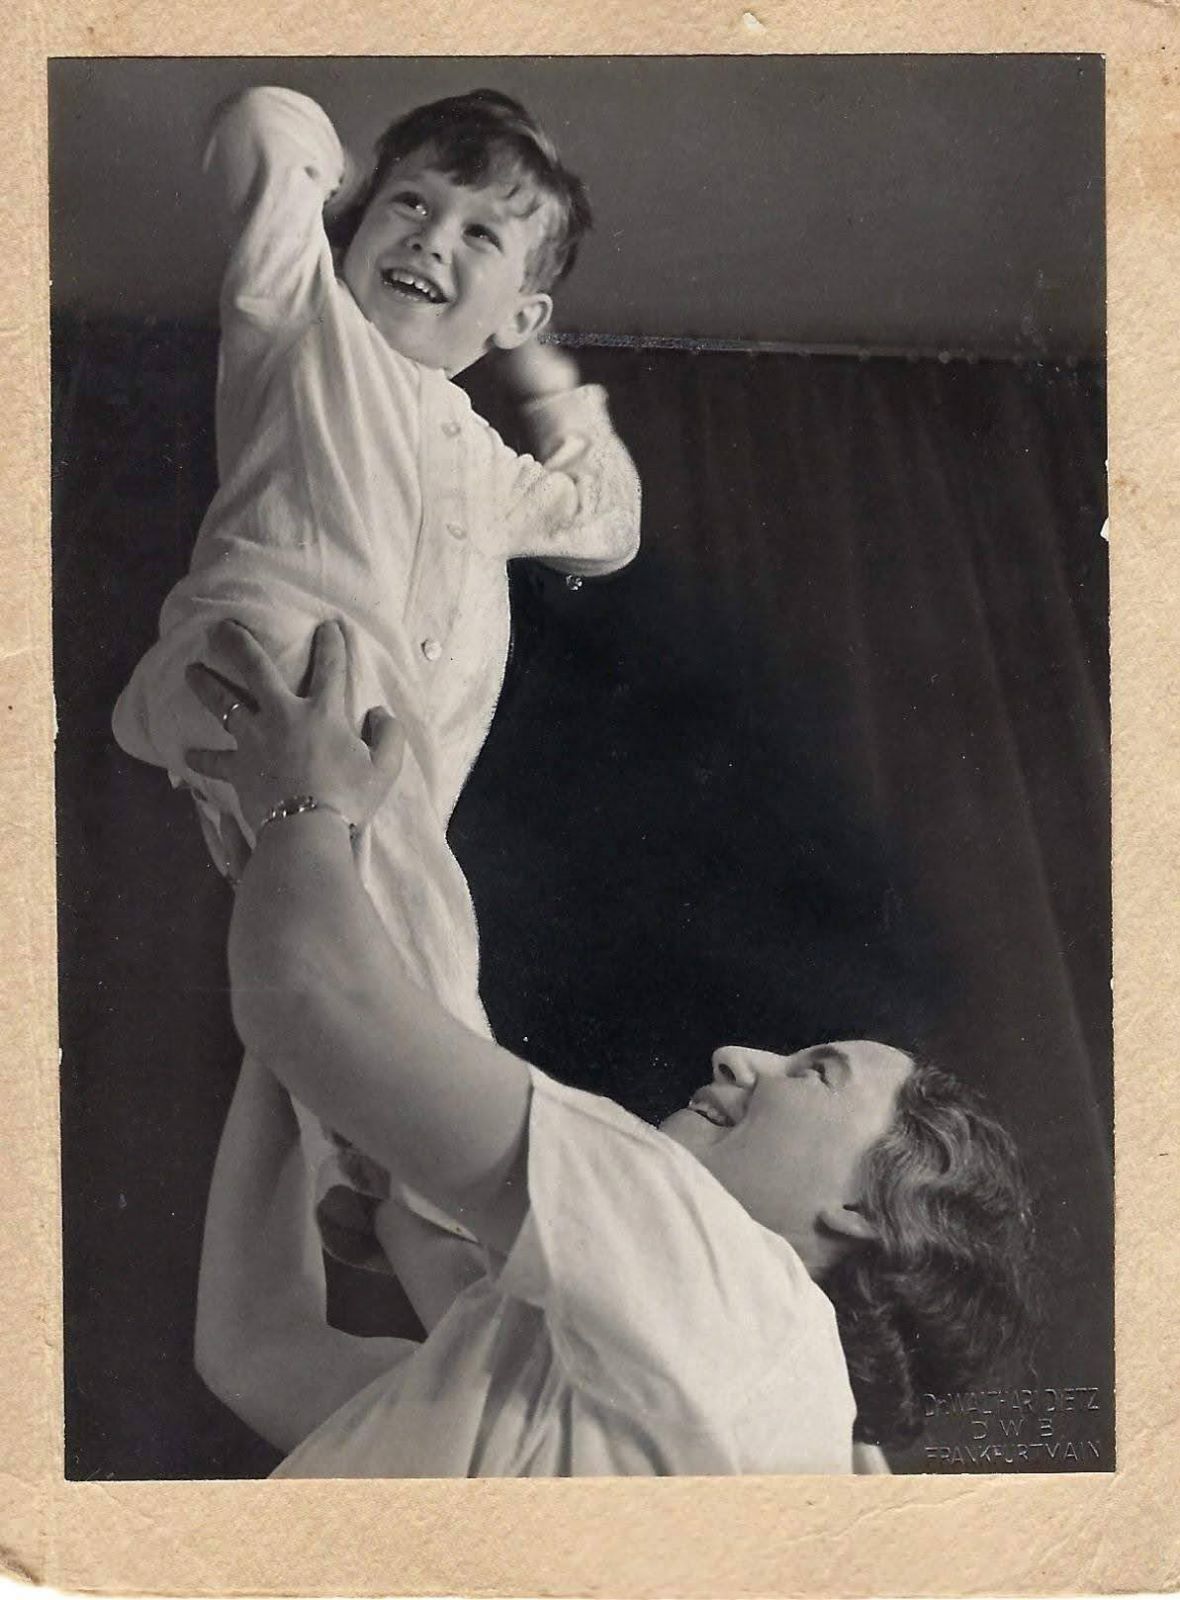 פרופ' אומן עם אמו בילדותו